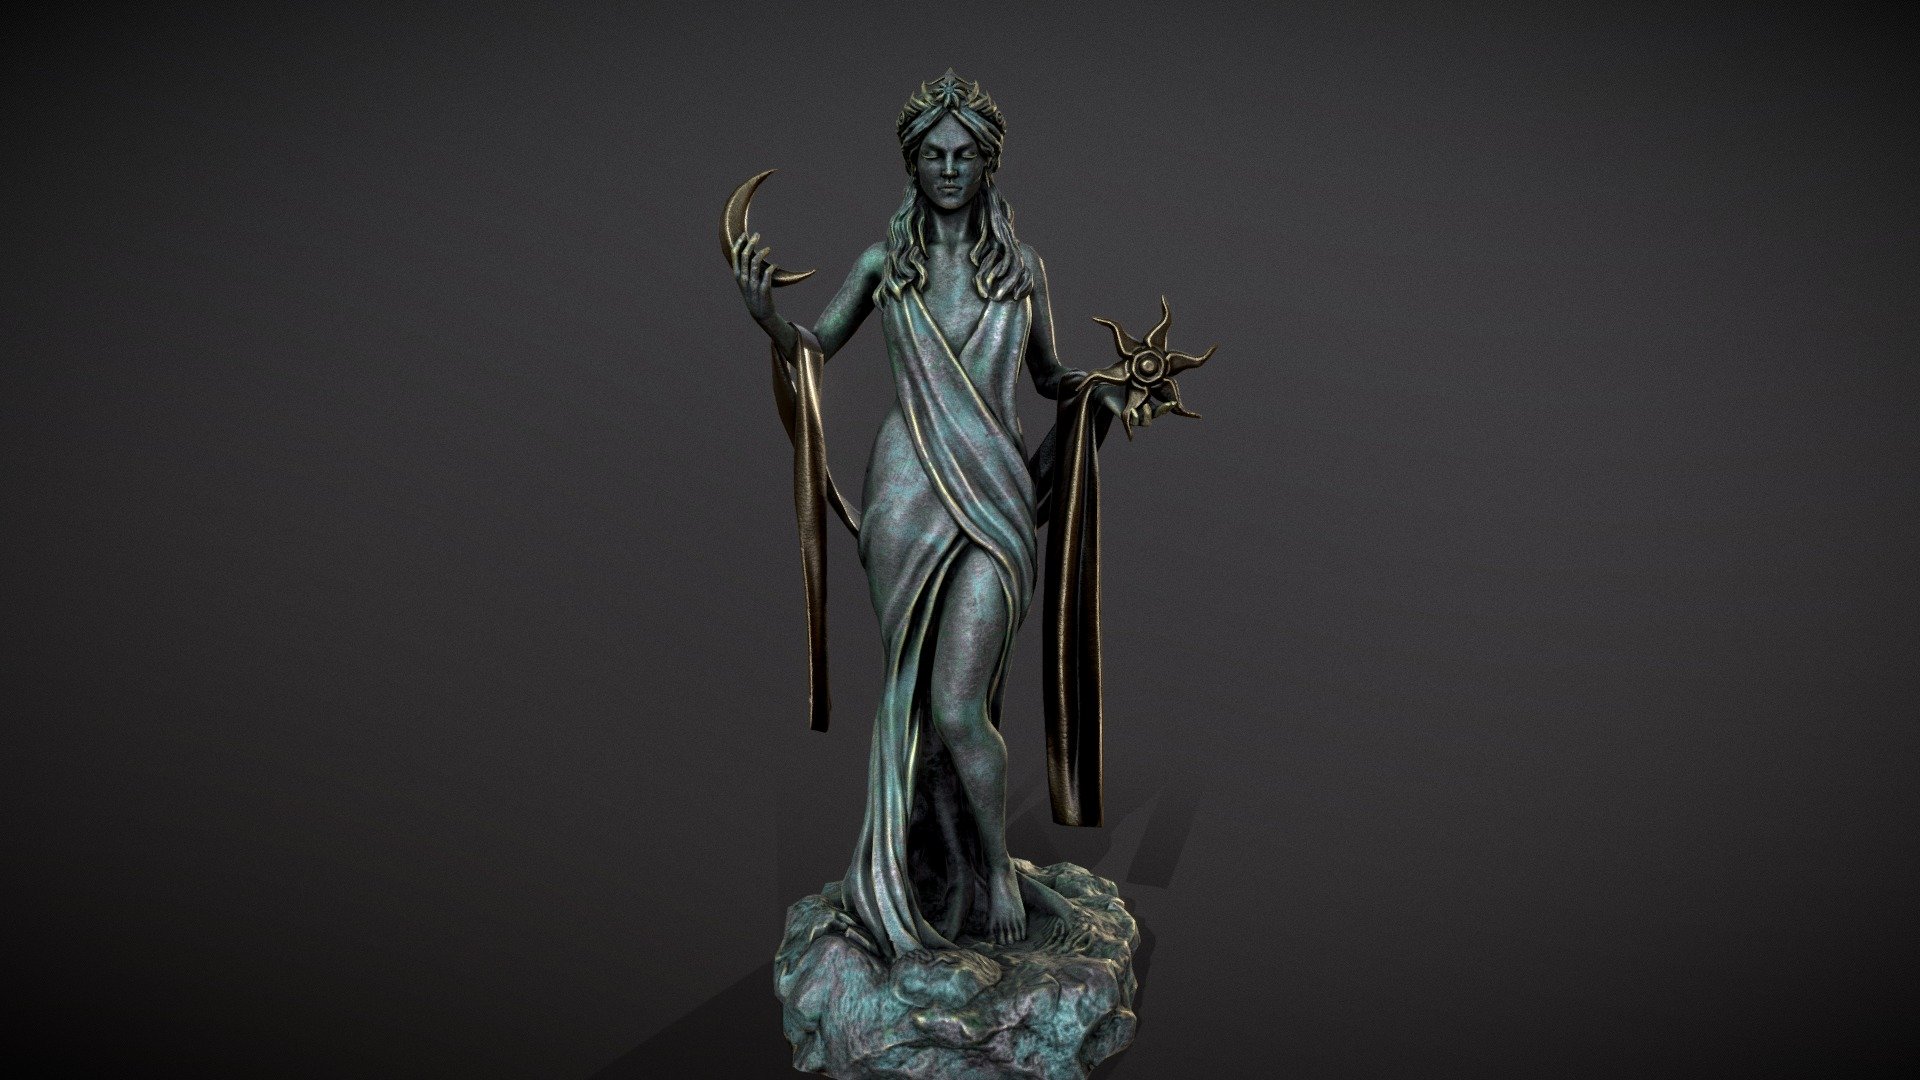 Azura statue - Azura - 3D model by Mandrake (@mandrake_3d) 3d model